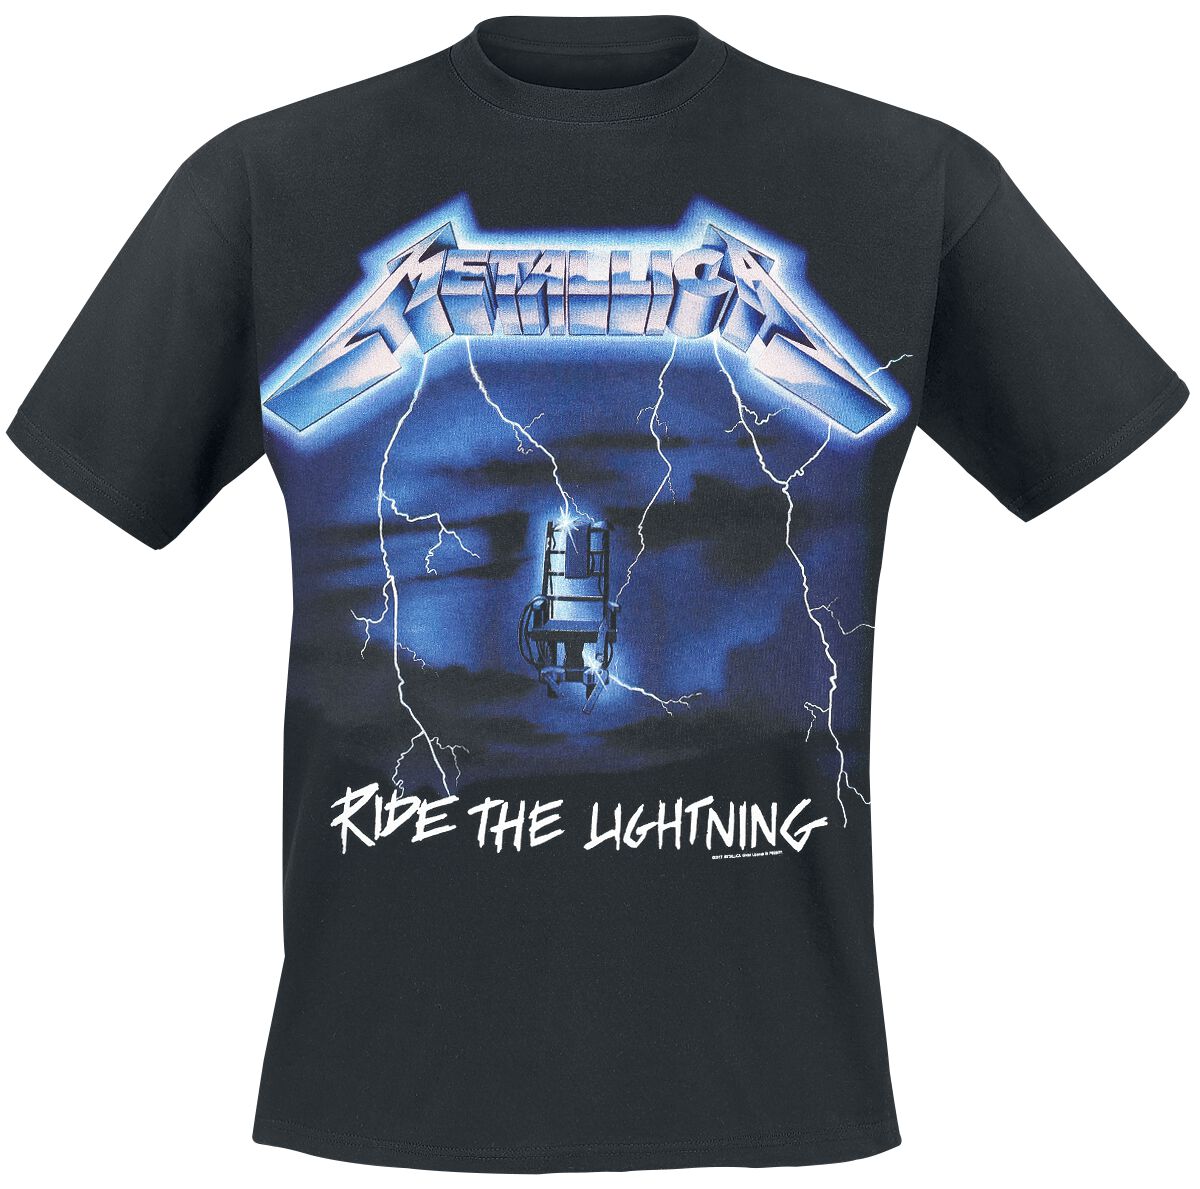 Metallica T-Shirt - Ride The Lightning - S bis 5XL - für Männer - Größe 5XL - schwarz  - Lizenziertes Merchandise!